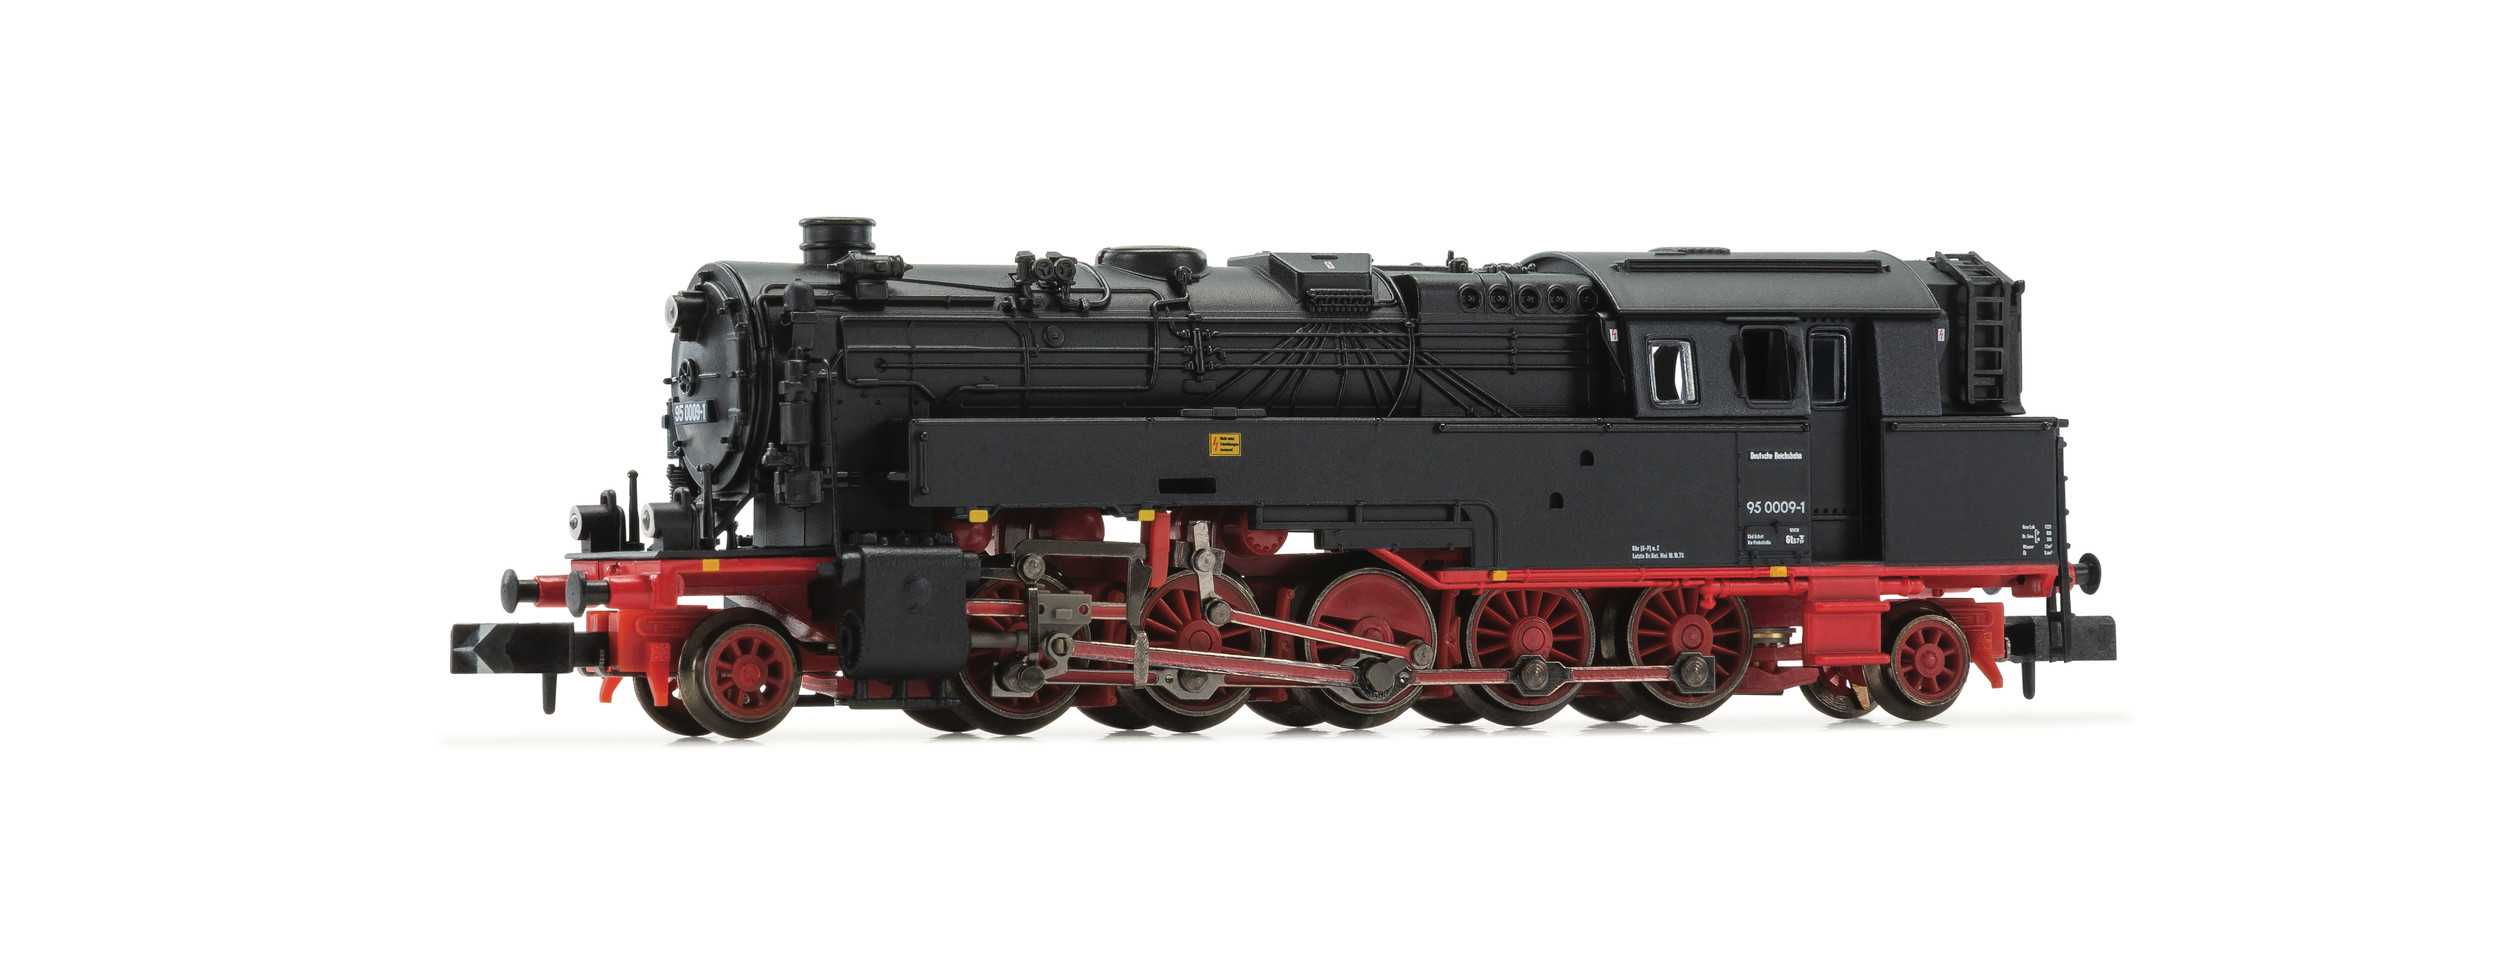 Trains miniatures : locomotives et autorail - Locomotive-citerne class